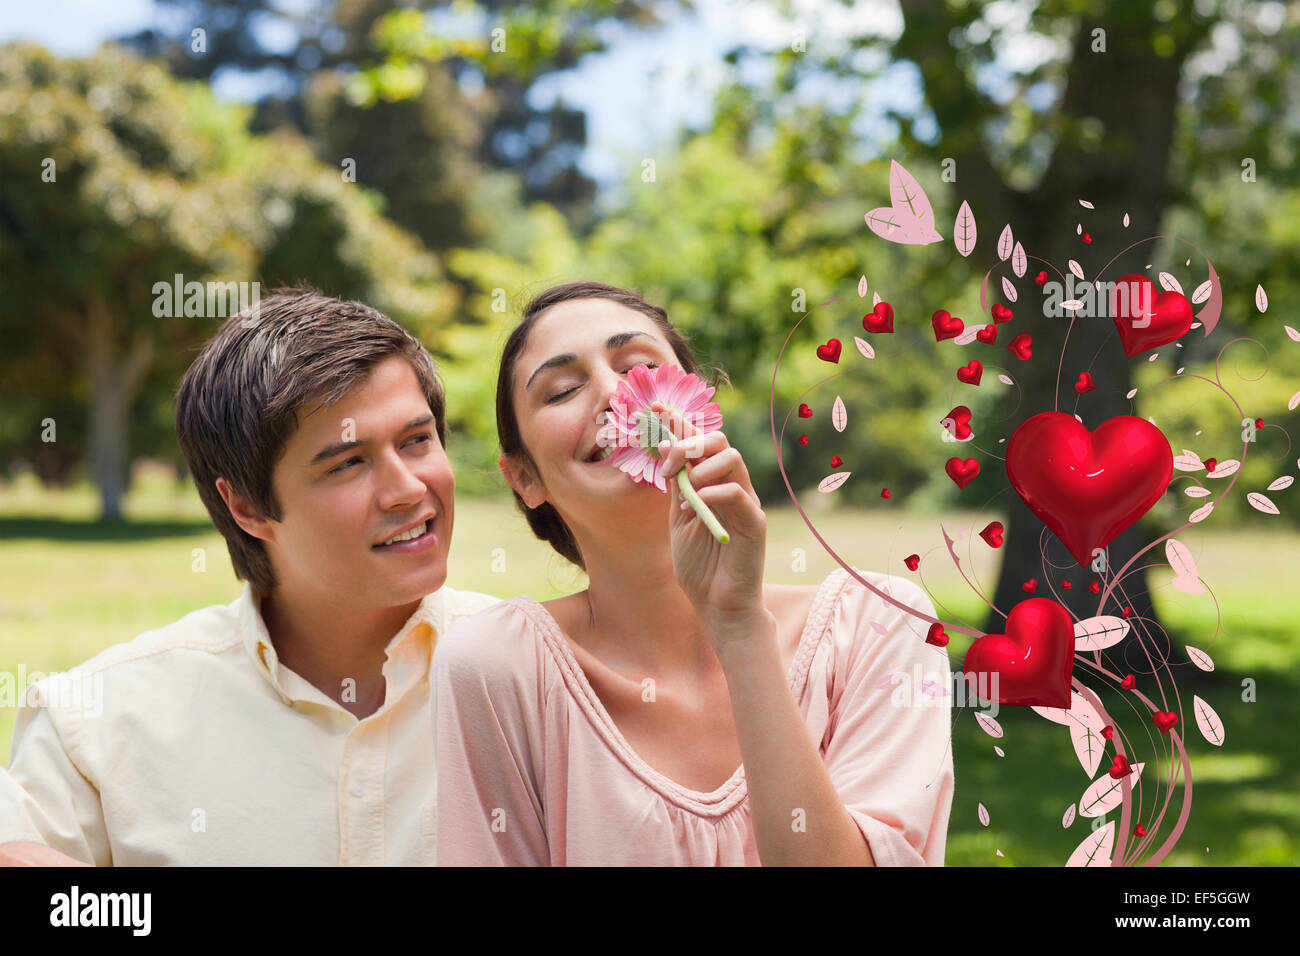 Imagen compuesta del hombre viendo a su amigo mientras ella está oliendo una flor Foto de stock